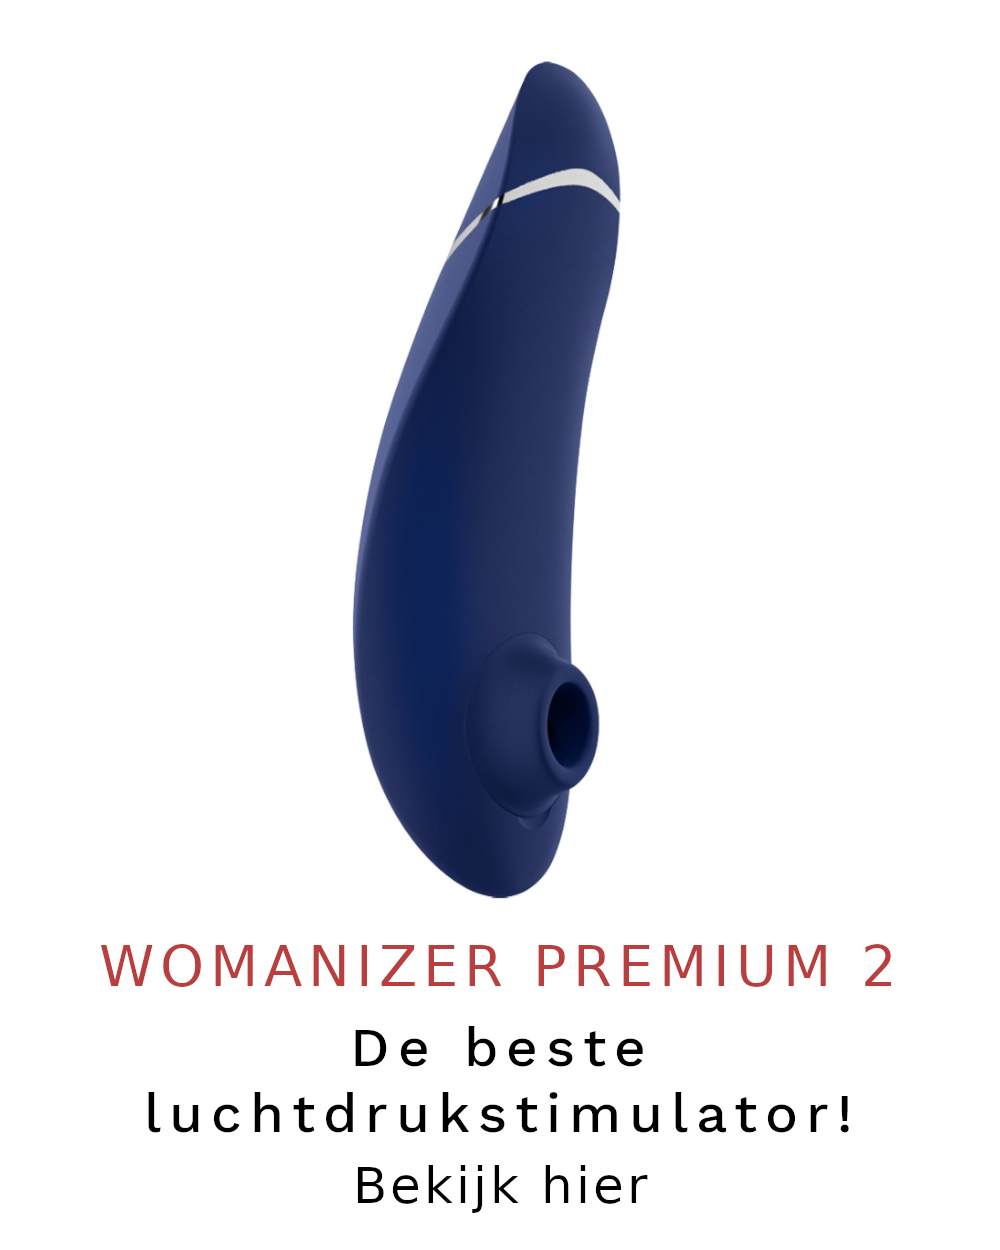 Womanizer Premium 2: De beste luchtdrukstimulator